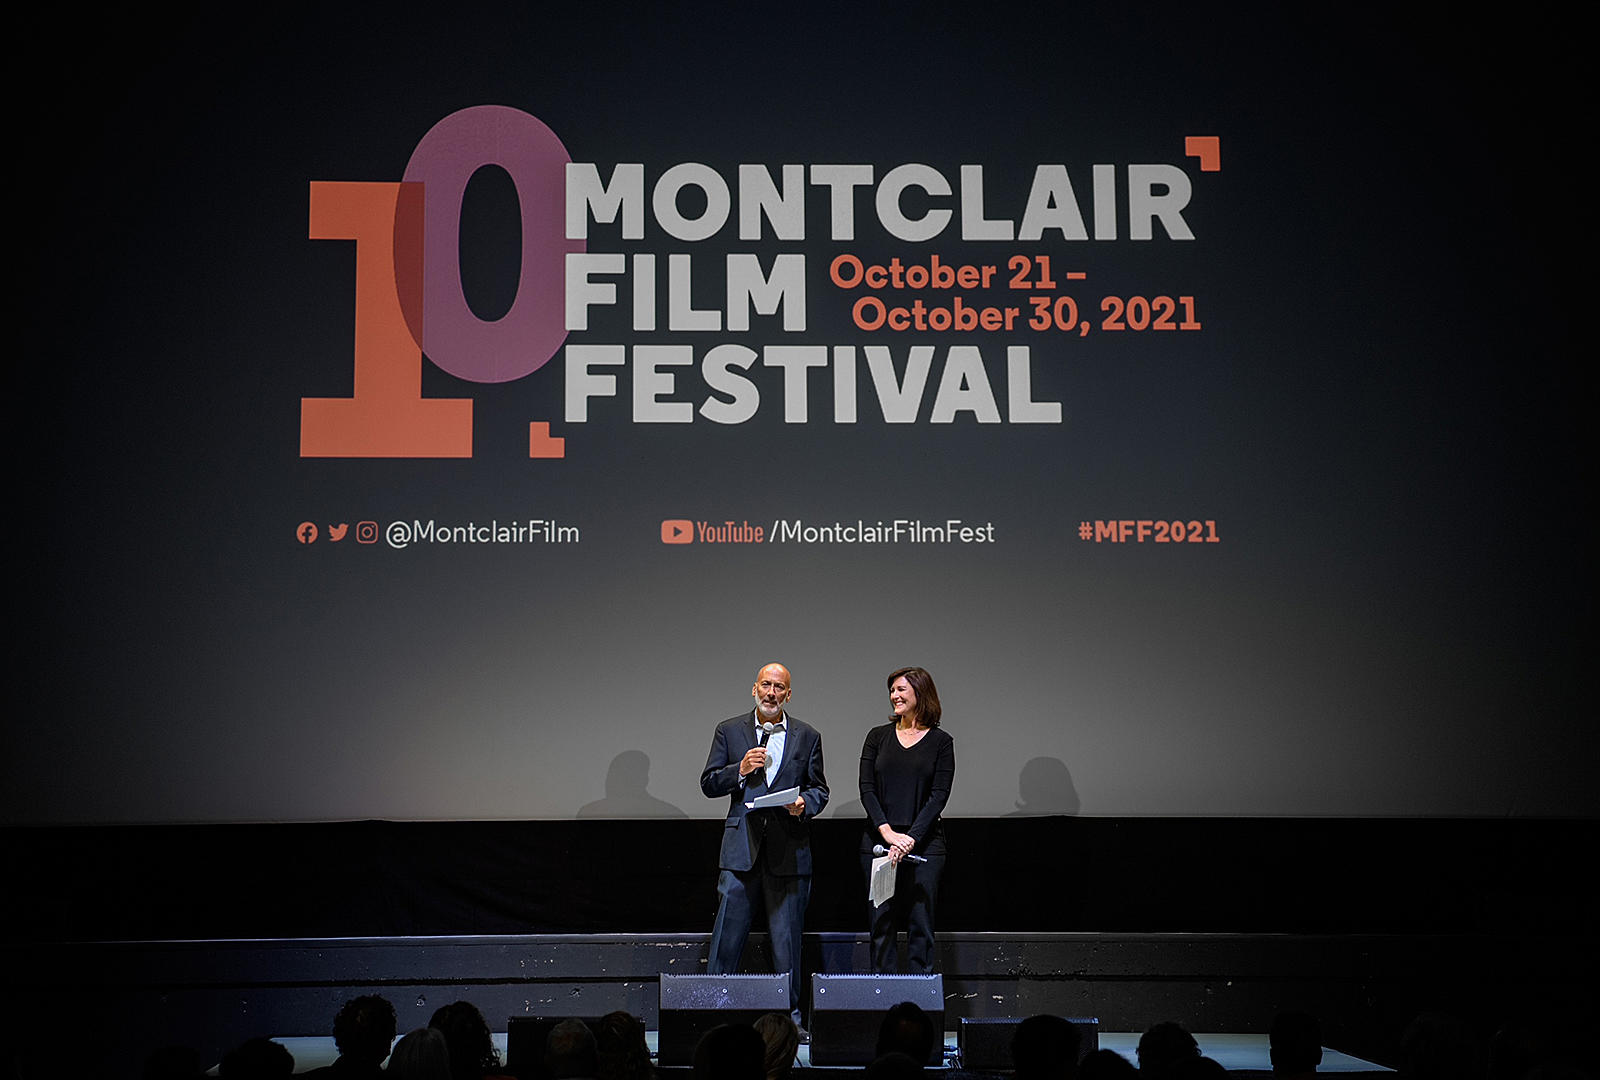 17-facts-about-montclair-film-festival